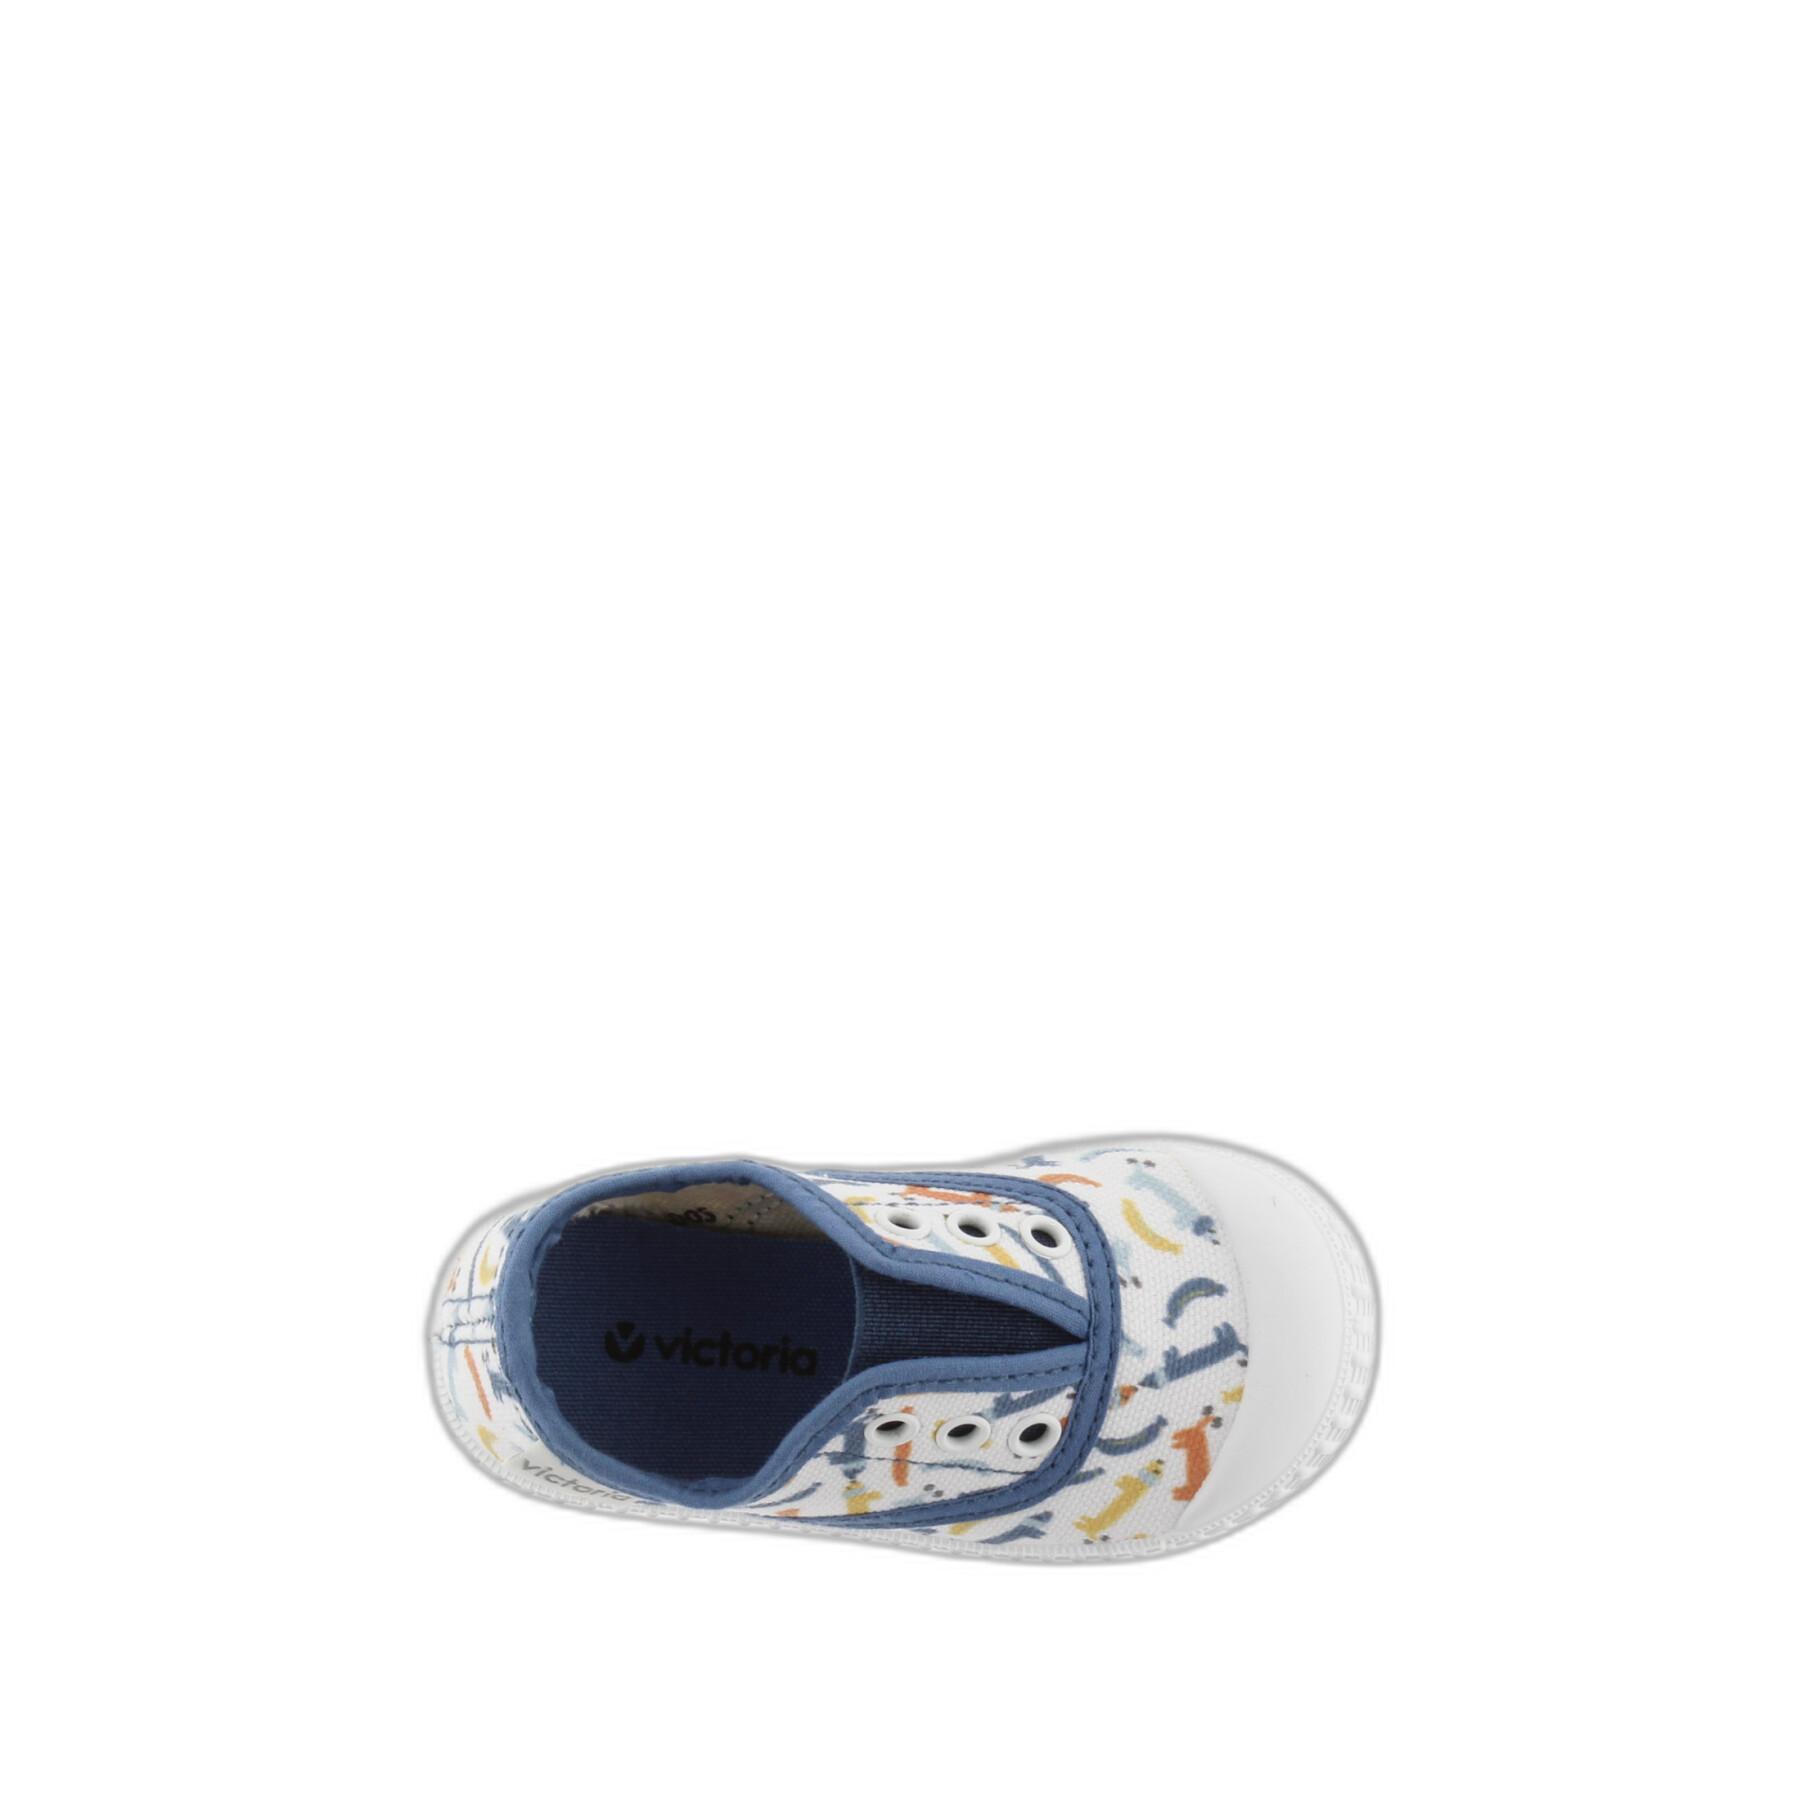 Zapatillas de lona elástica para bebé Victoria 1915 Print